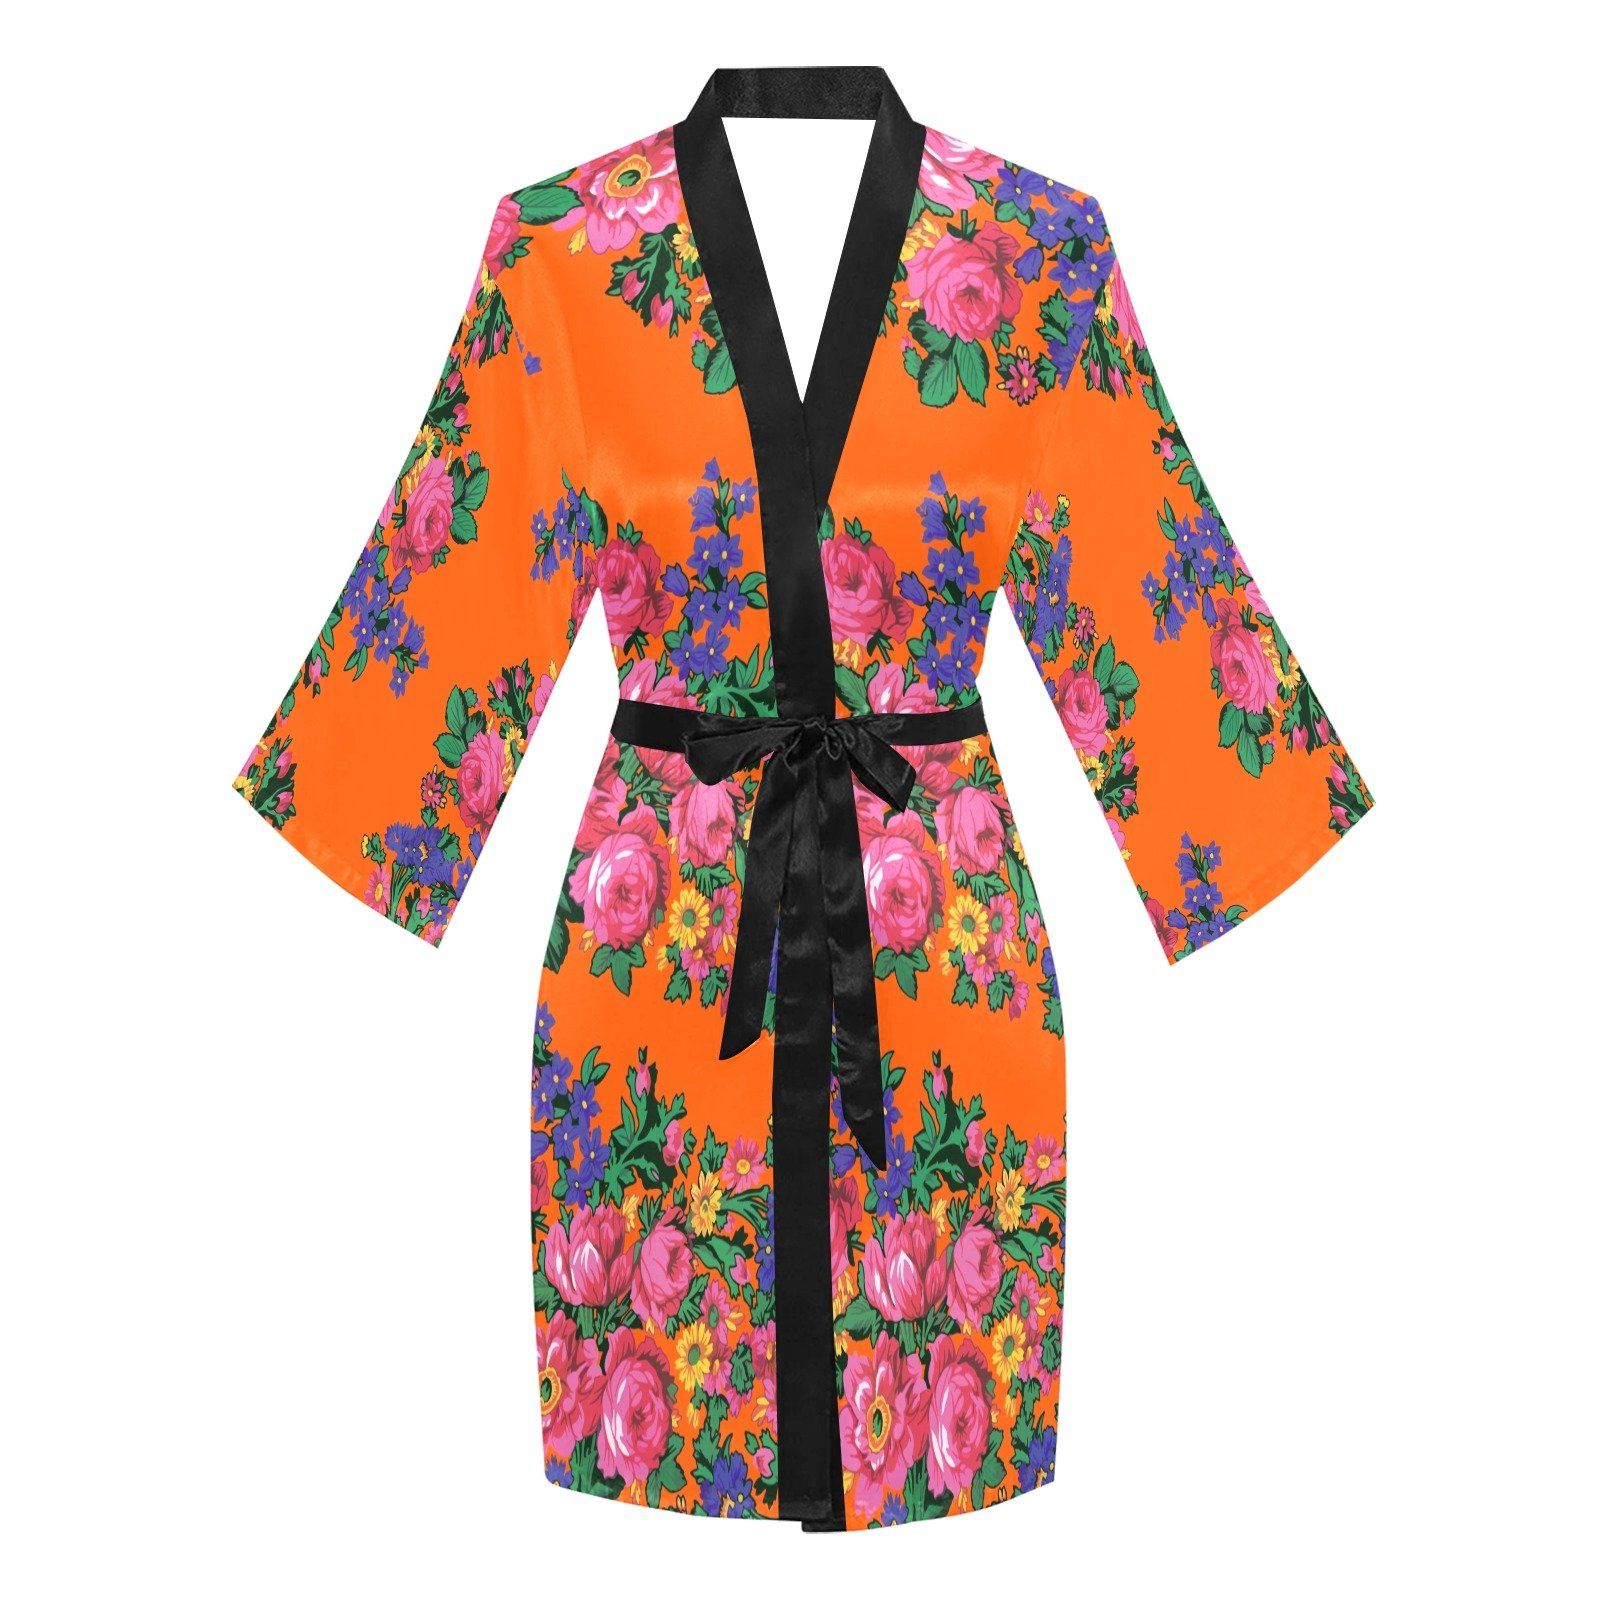 Kokum's Revenge Sierra Long Sleeve Kimono Robe Long Sleeve Kimono Robe e-joyer 